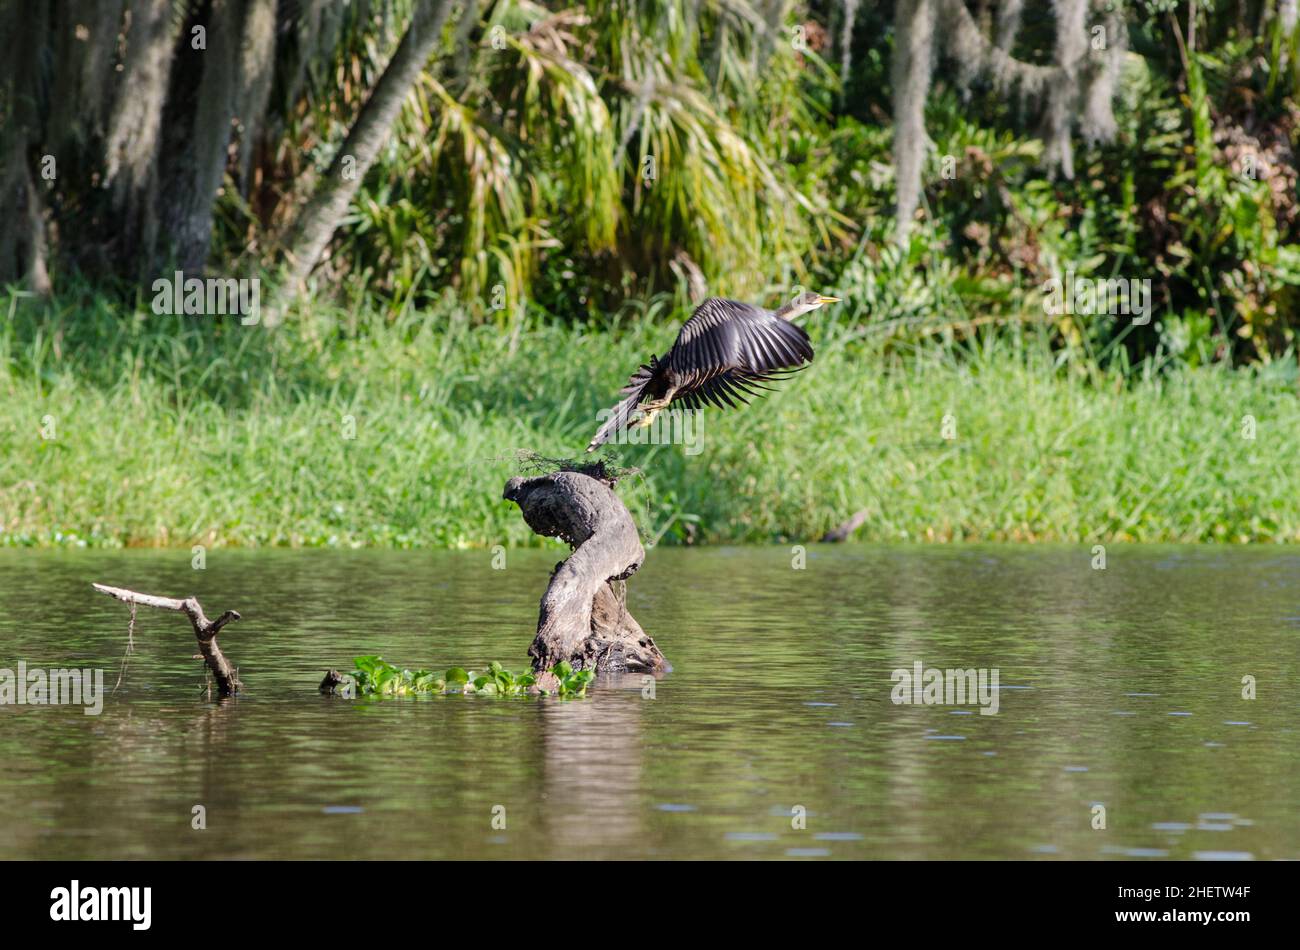 Una ave anhinga hembra despida de un tronco en el Rana Creek justo fuera del Parque Estatal Tera Ceia Preserve, FL, Estados Unidos Foto de stock